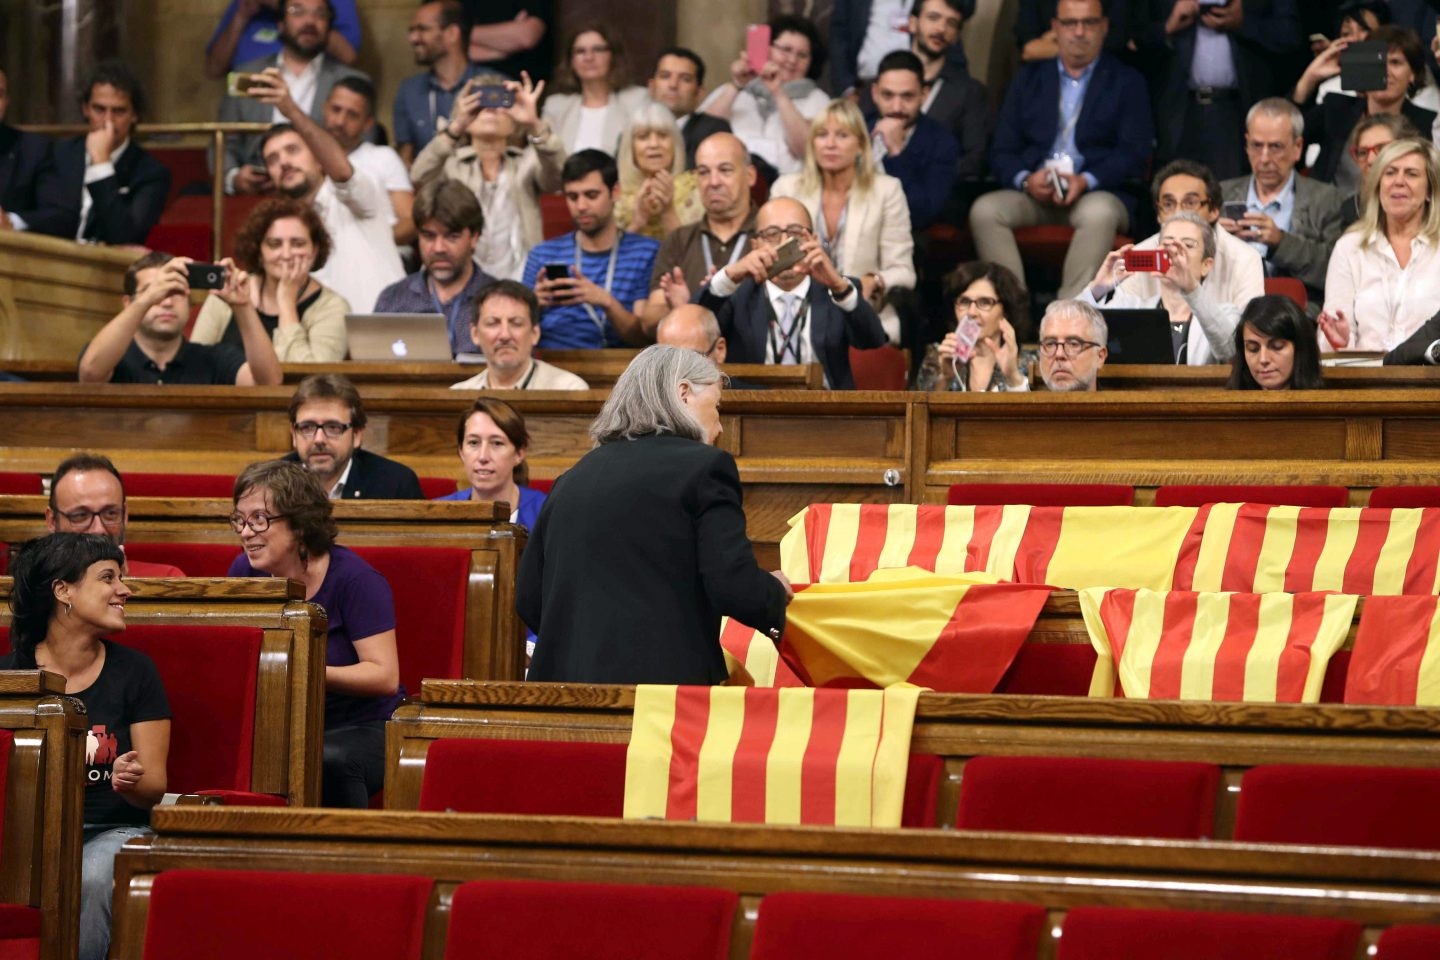 La diputada de Podem Ángels Martínez reitra las banderas de España del hemiciclo del Parlament y deja las esteladas catalanas.